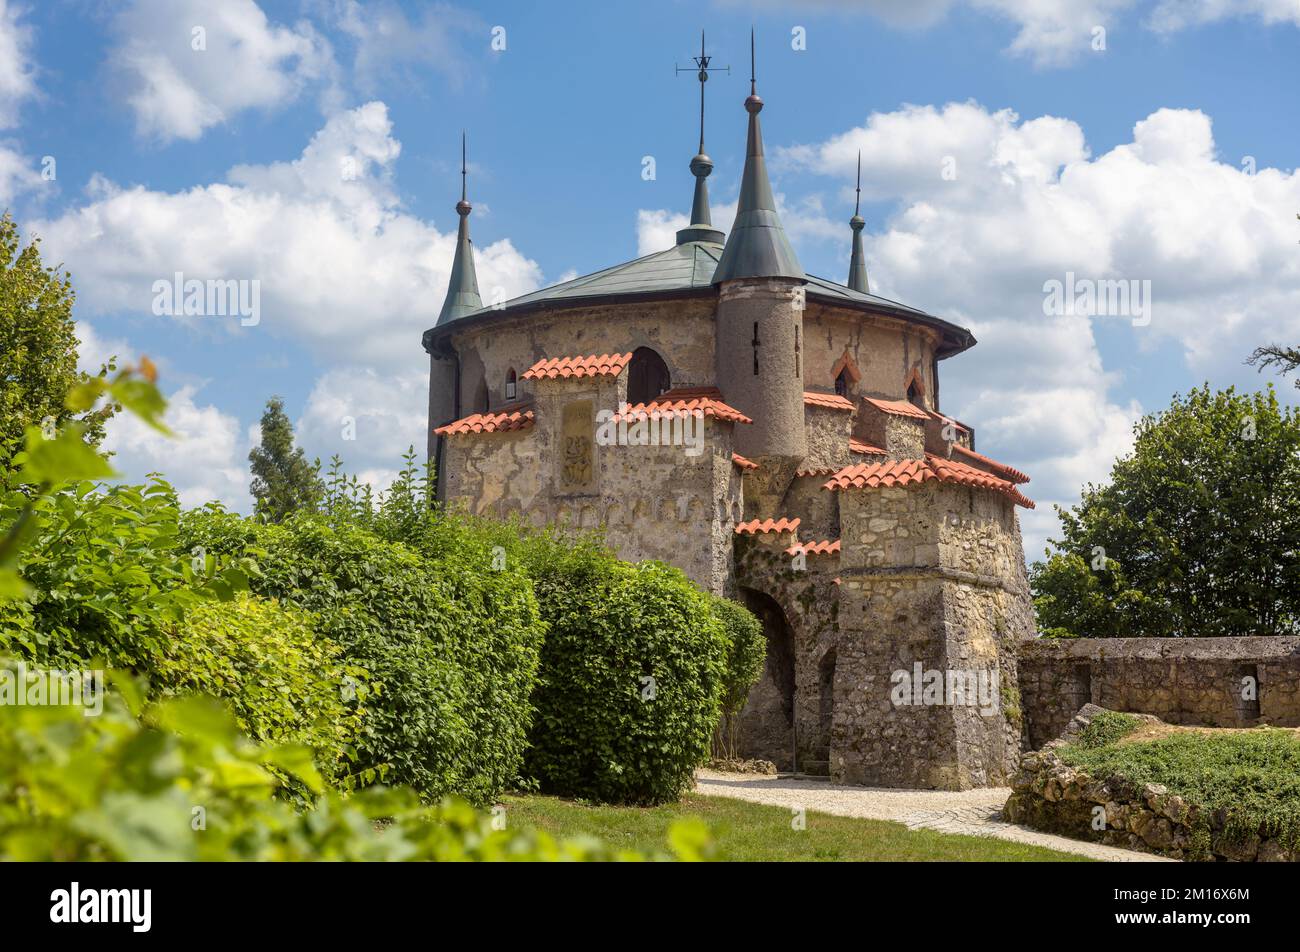 Giardino del castello di Lichtenstein, Germania, Europa. Questo luogo è il punto di riferimento di Schwarzwald. Vista panoramica delle piante verdi, del cielo e della torre in stile medievale Foto Stock